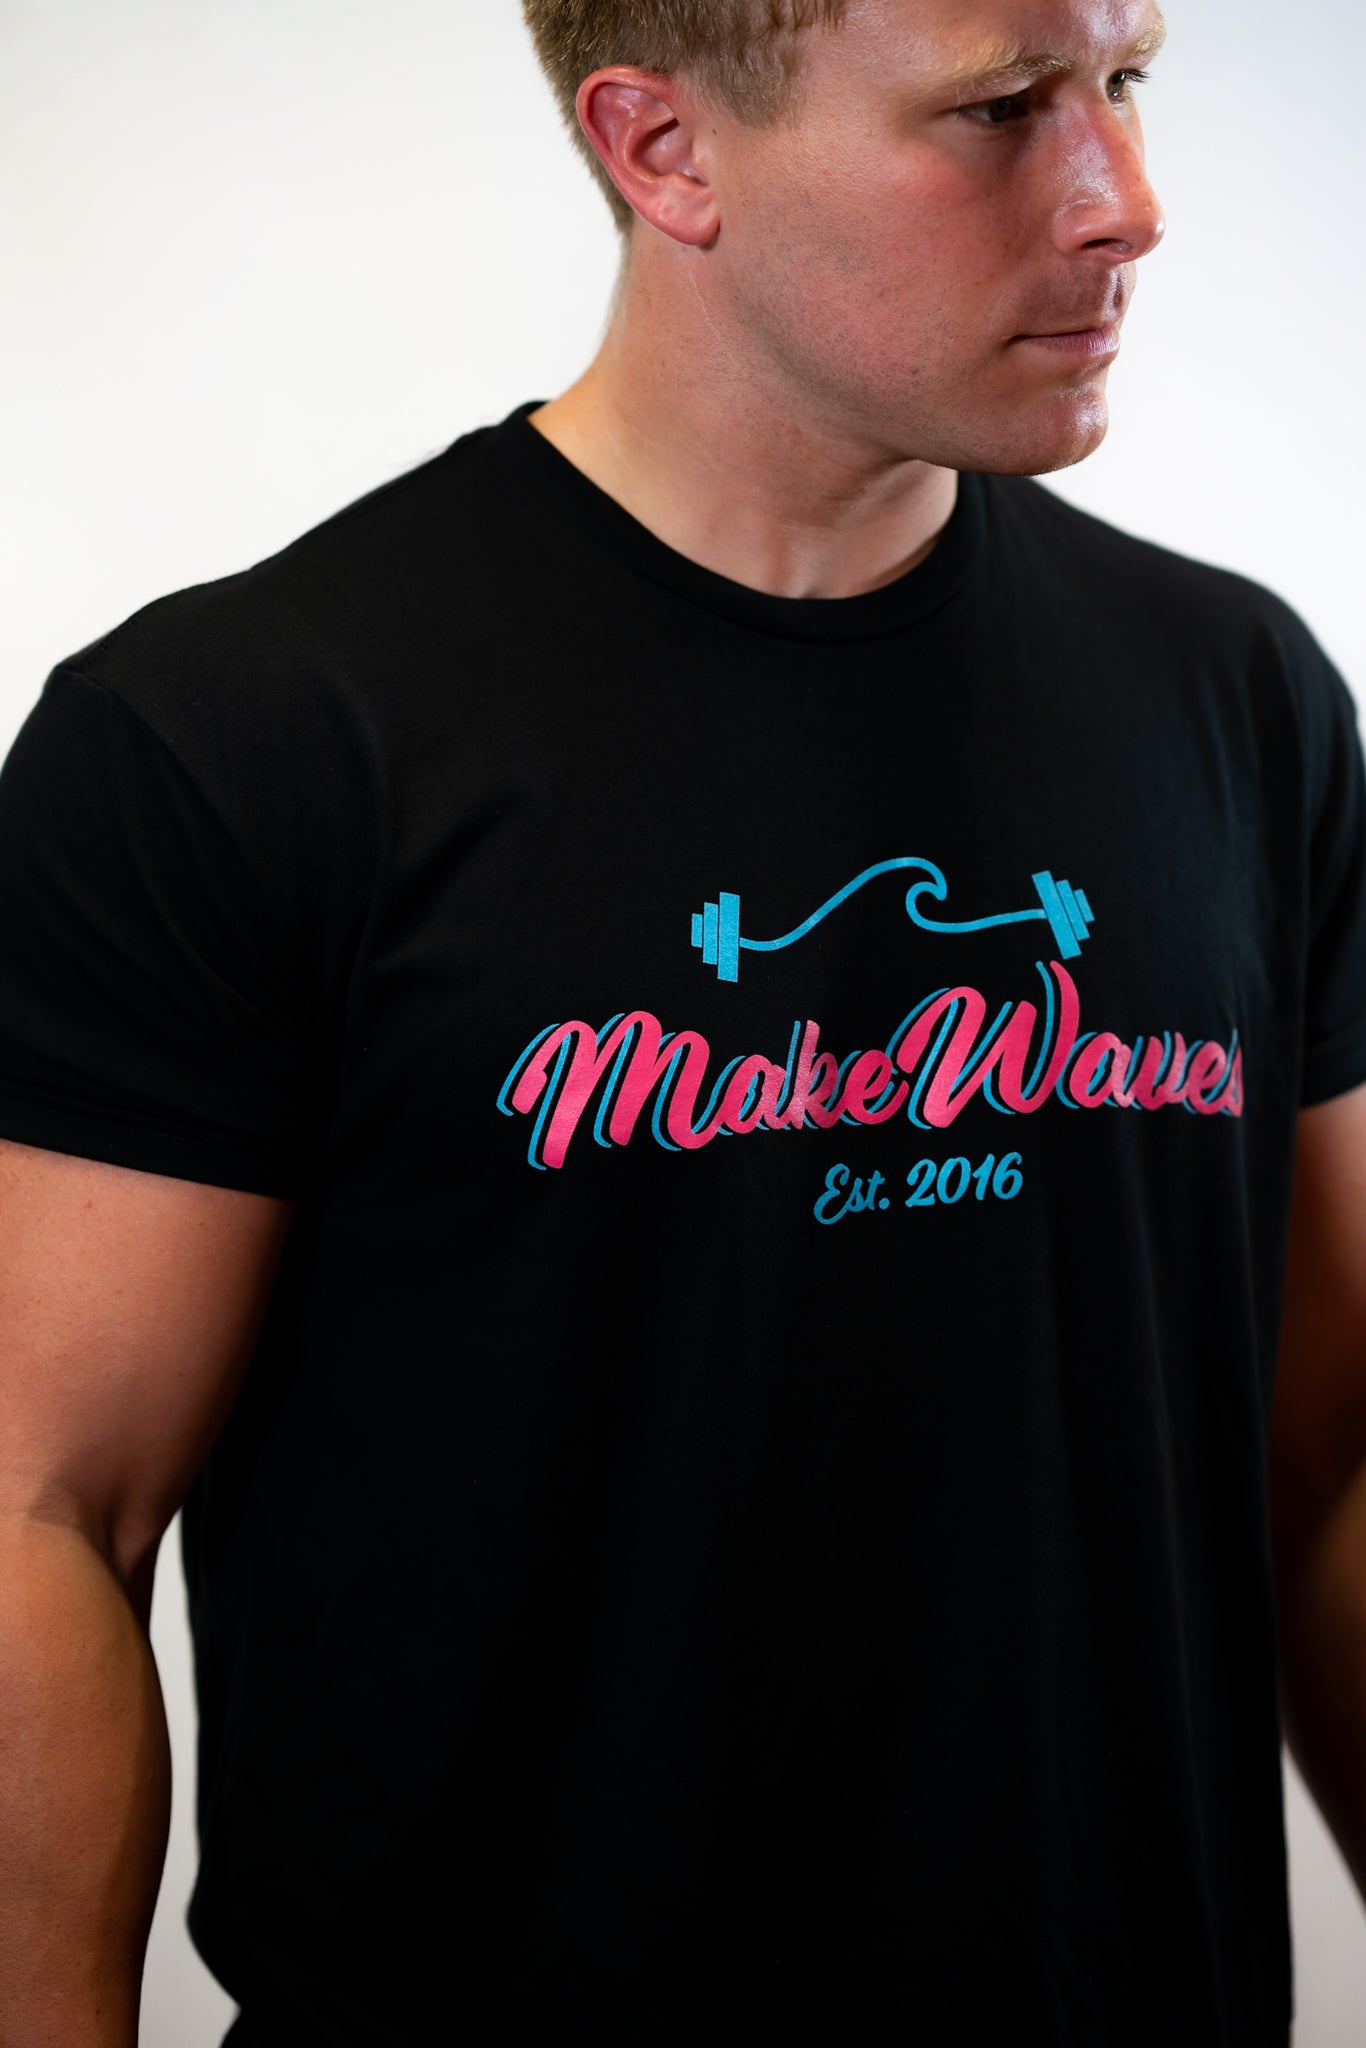 MakeWaves Summer Vibe Shirt